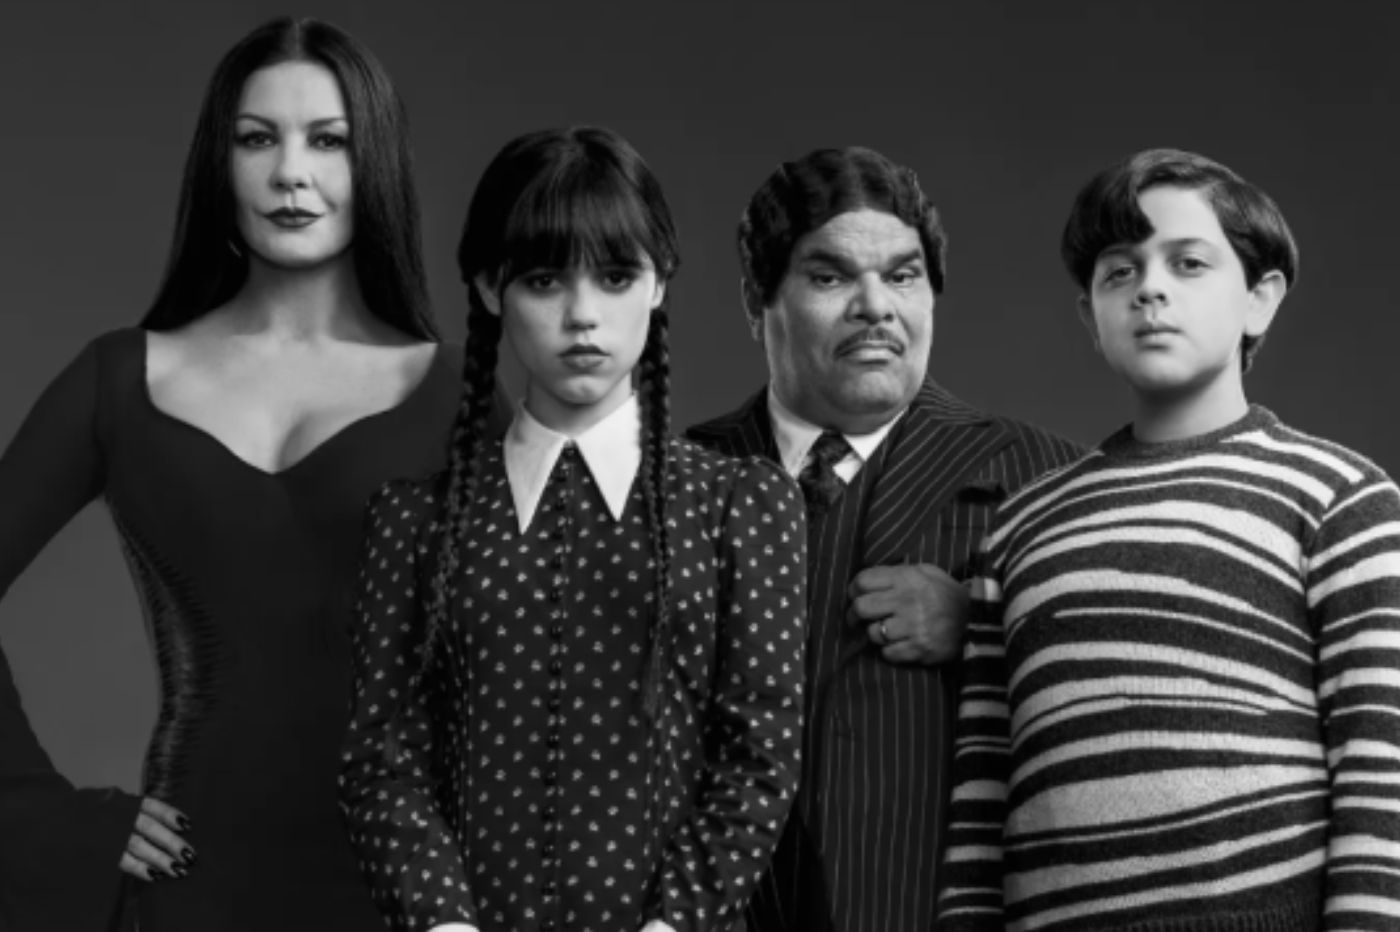 Tim Burton à la réalisation d'une série Netflix sur La Famille Addams ?